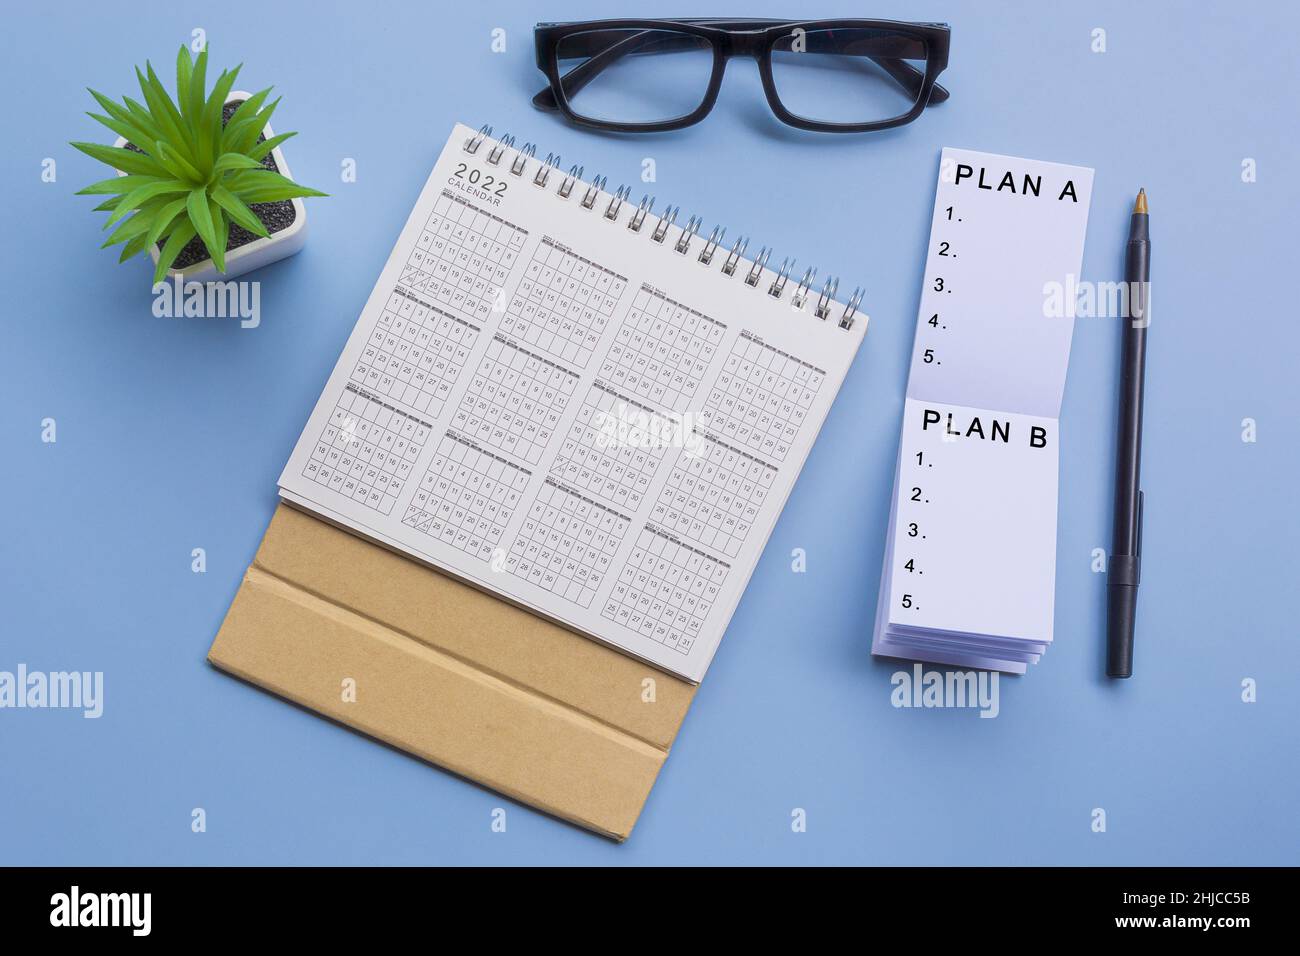 Testo su blocco note con calendario 2022, bicchieri, penna e piante in vaso su una scrivania - piano A, piano B. Foto Stock